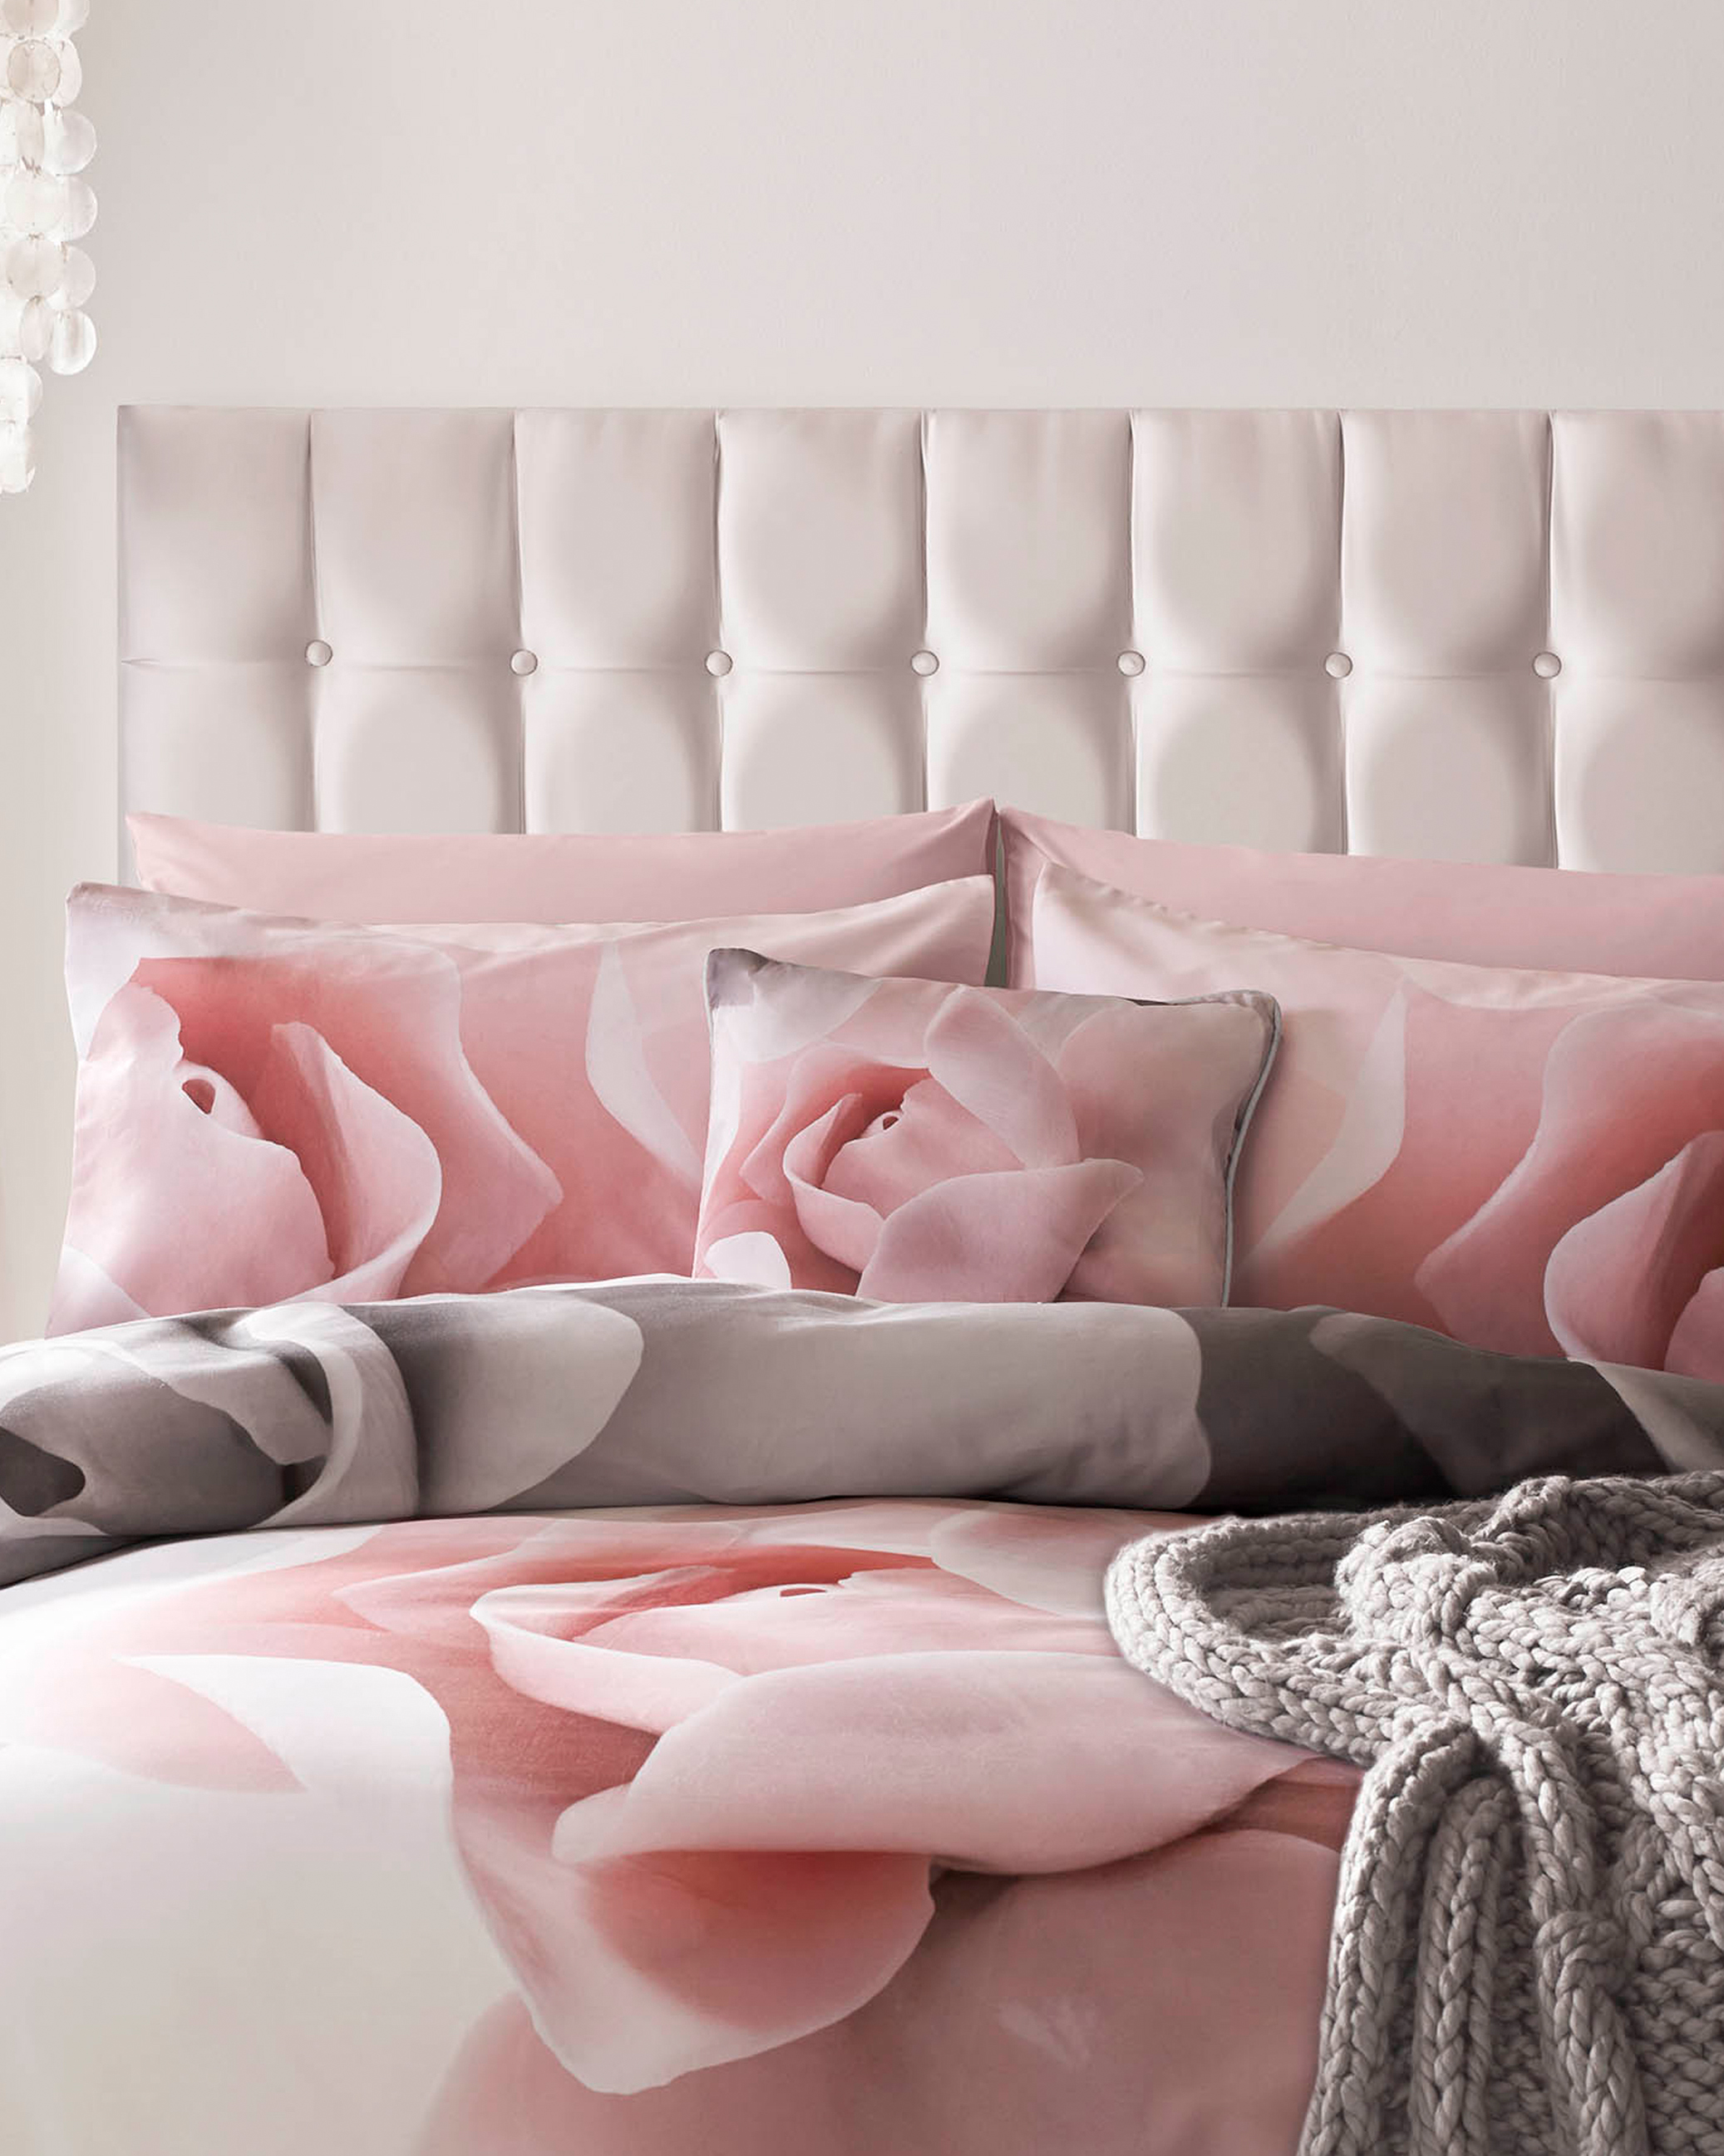 Porcelain Rose King Size Duvet Cover, Pink King Size Bed